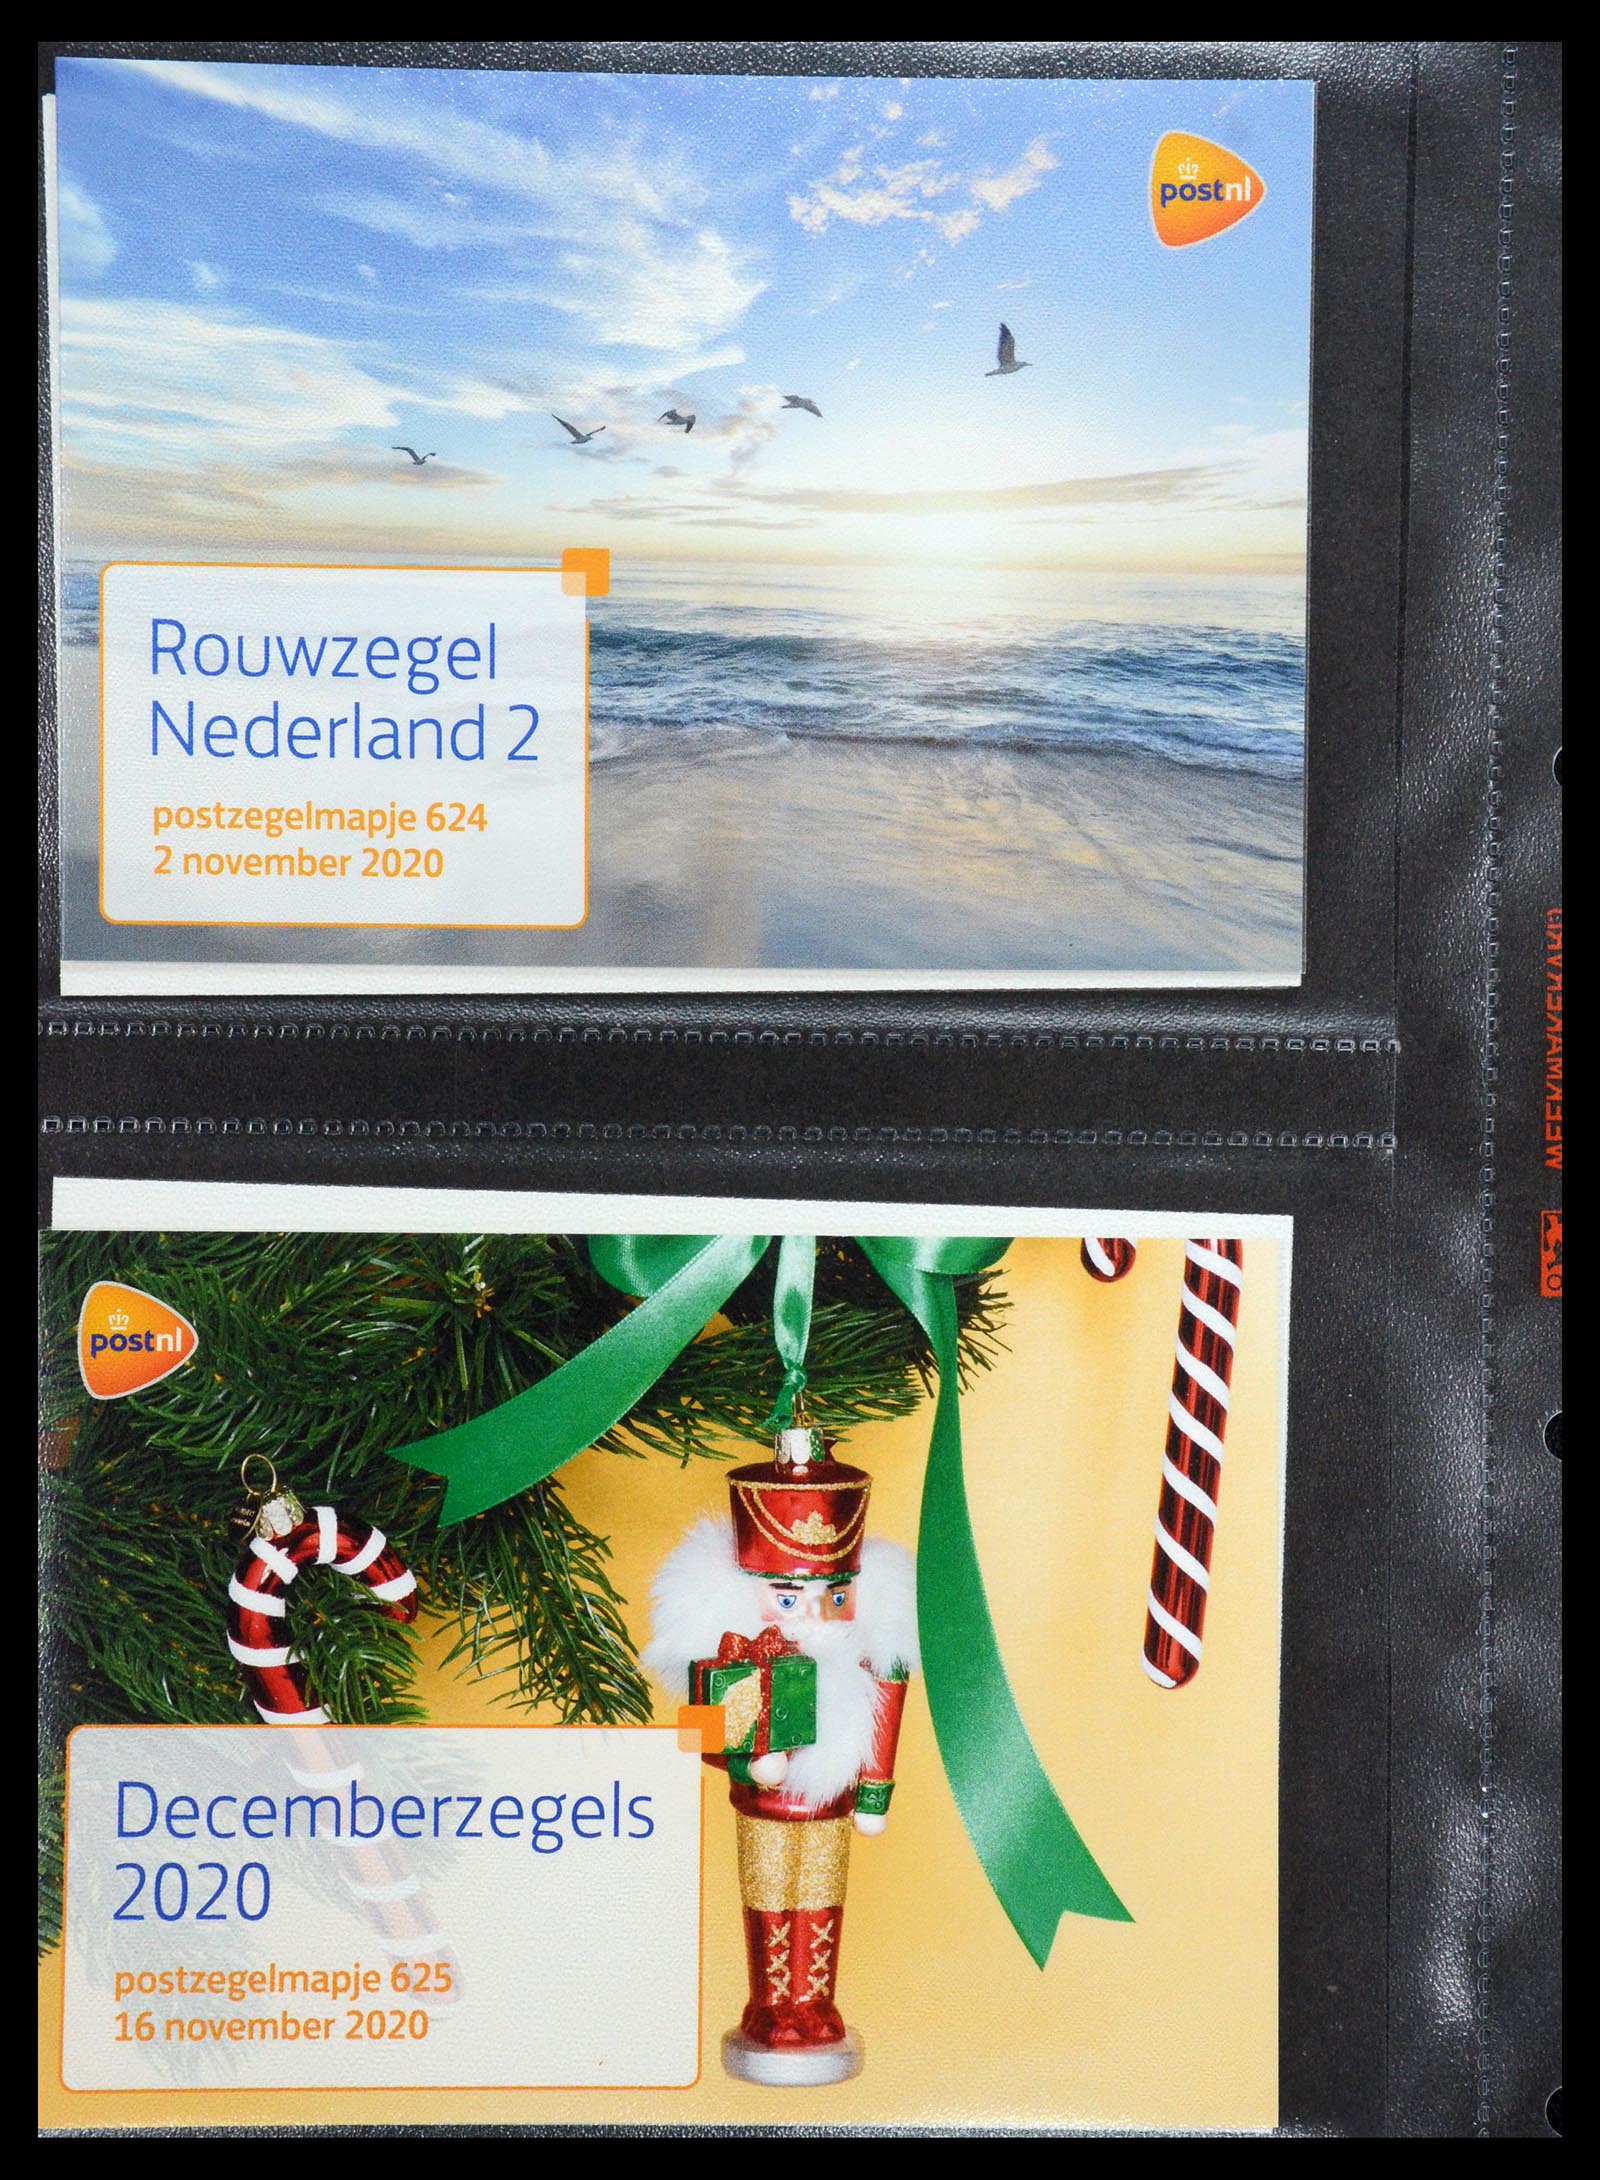 35144 378 - Stamp Collection 35144 Netherlands PTT presentation packs 1982-2021!